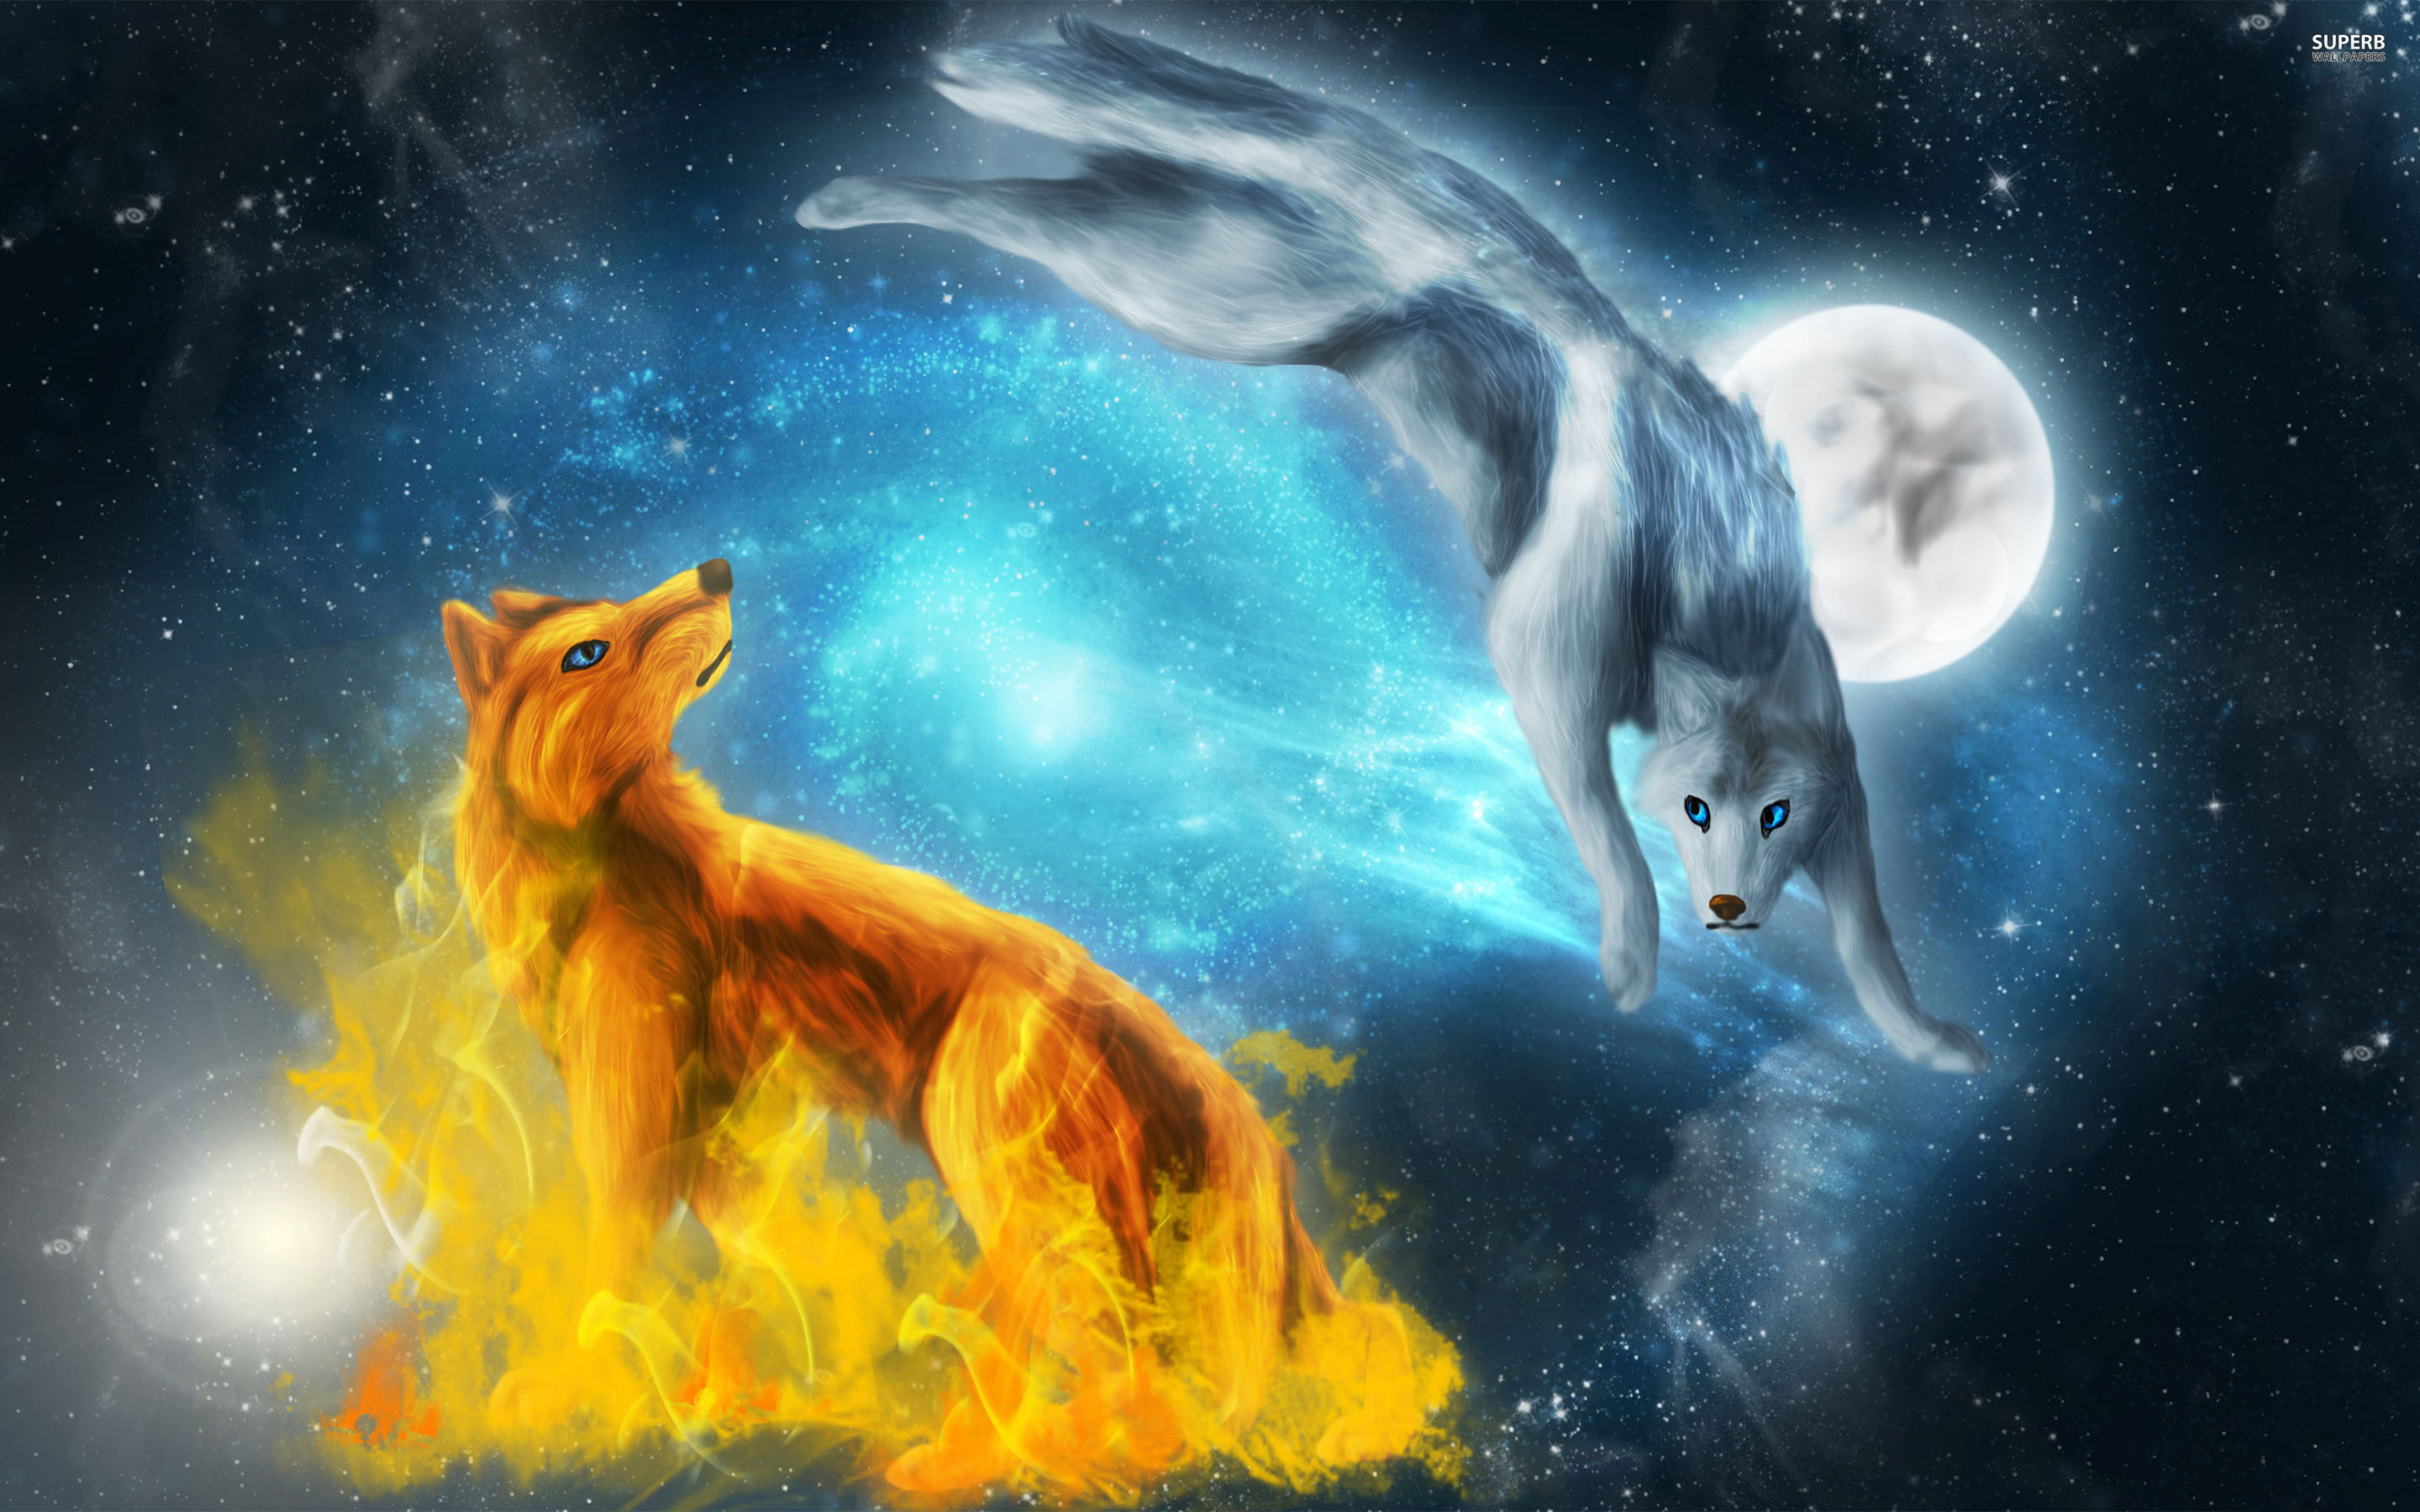 Amazing Wolves image – Amazing Wolves Image 36709371 – Fanpop